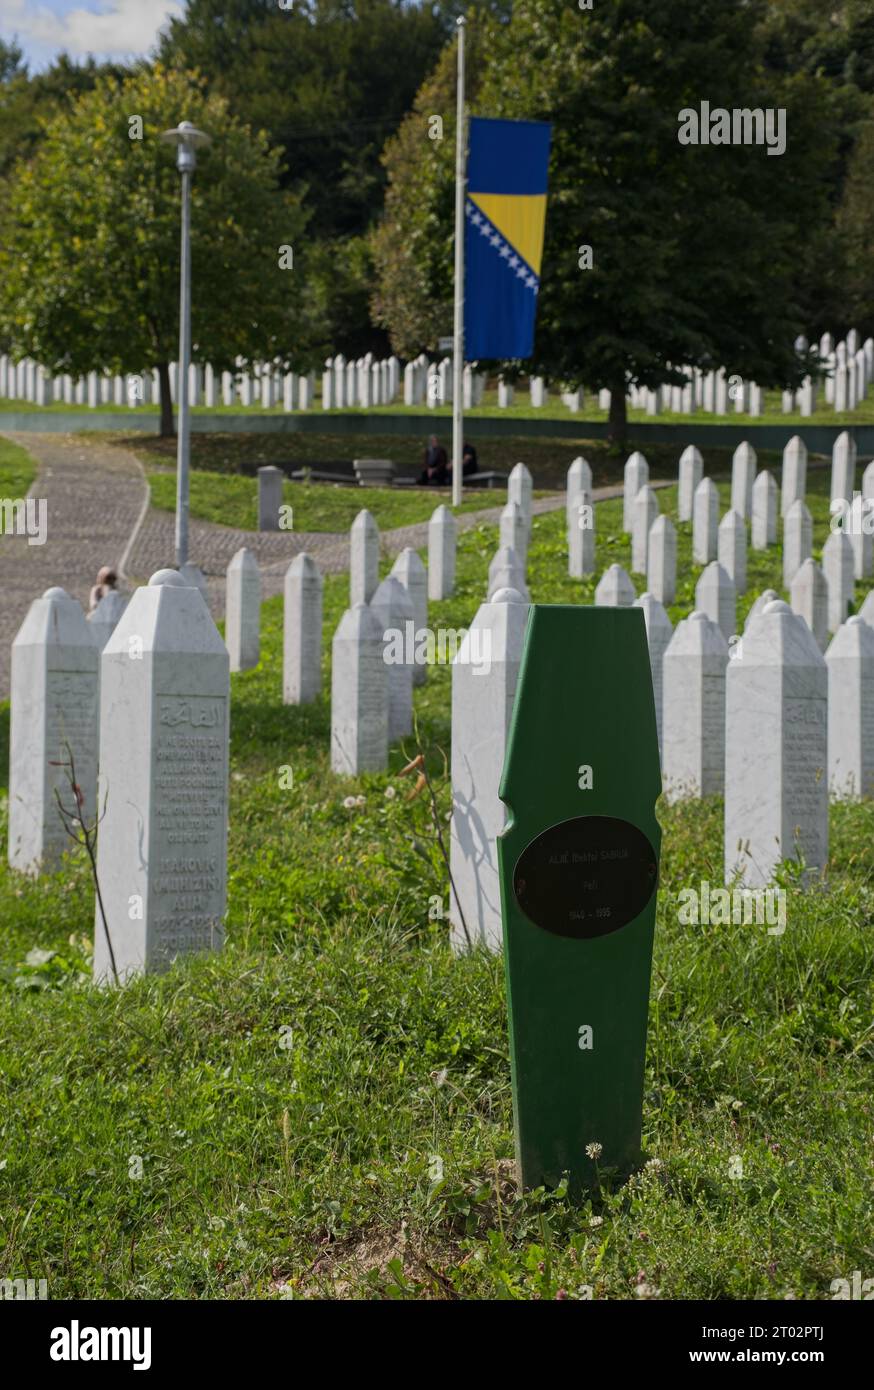 Potocari, Bosnien und Herzegowina - 2. Oktober 2023: Srebrenica - Potocari Memorial Center. Das ist der größte Völkermord in Europa seit dem Zweiten Weltkrieg Stockfoto